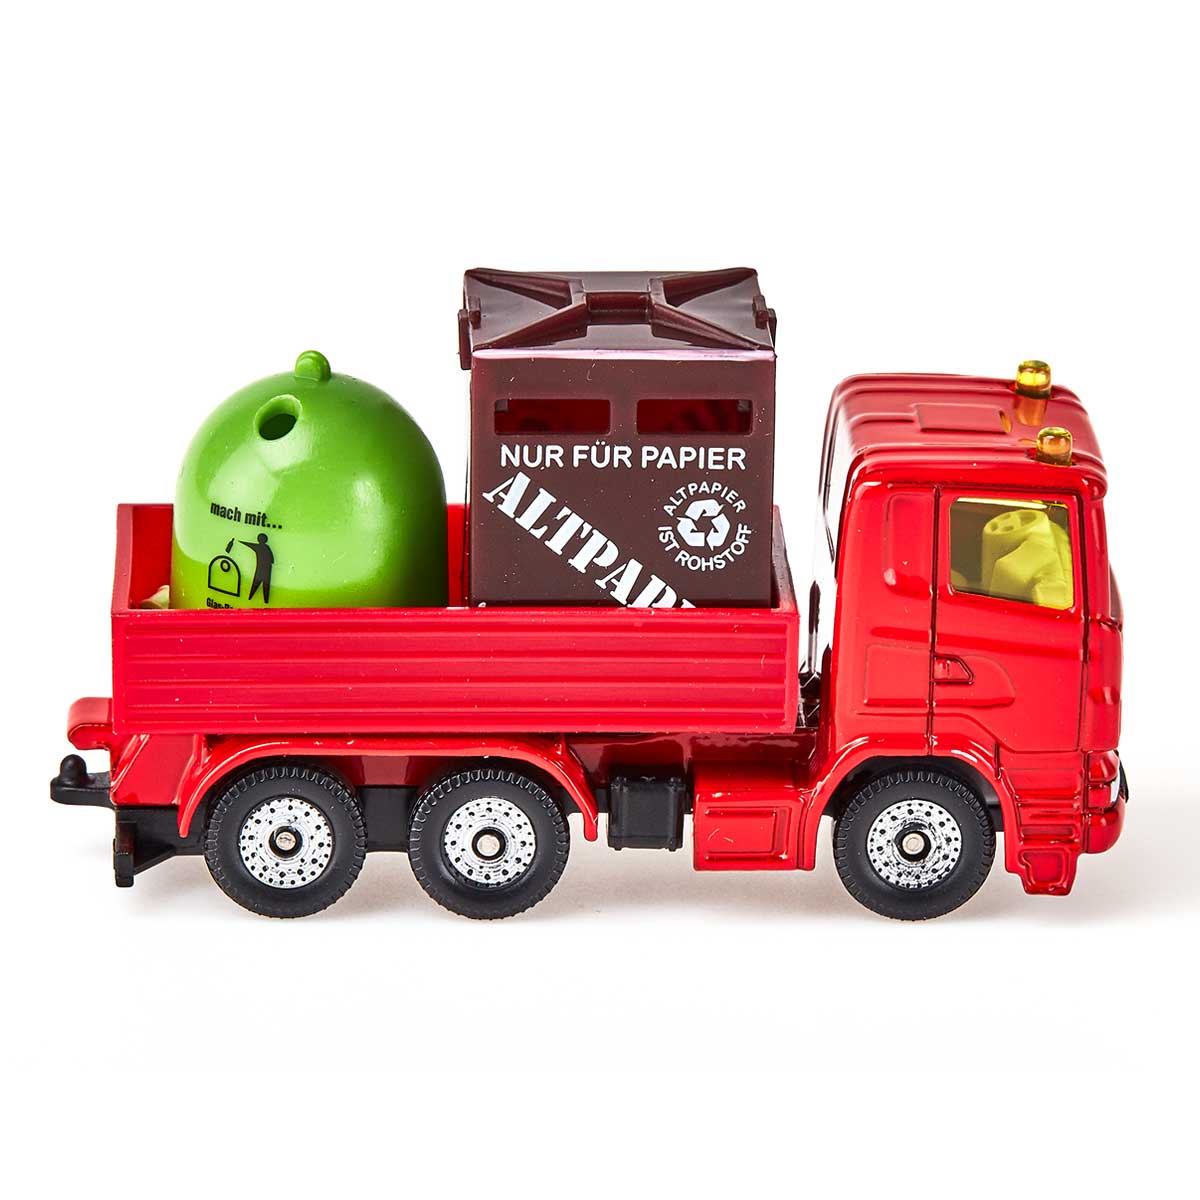 リサイクル品回収トラック(ジク・SIKU)